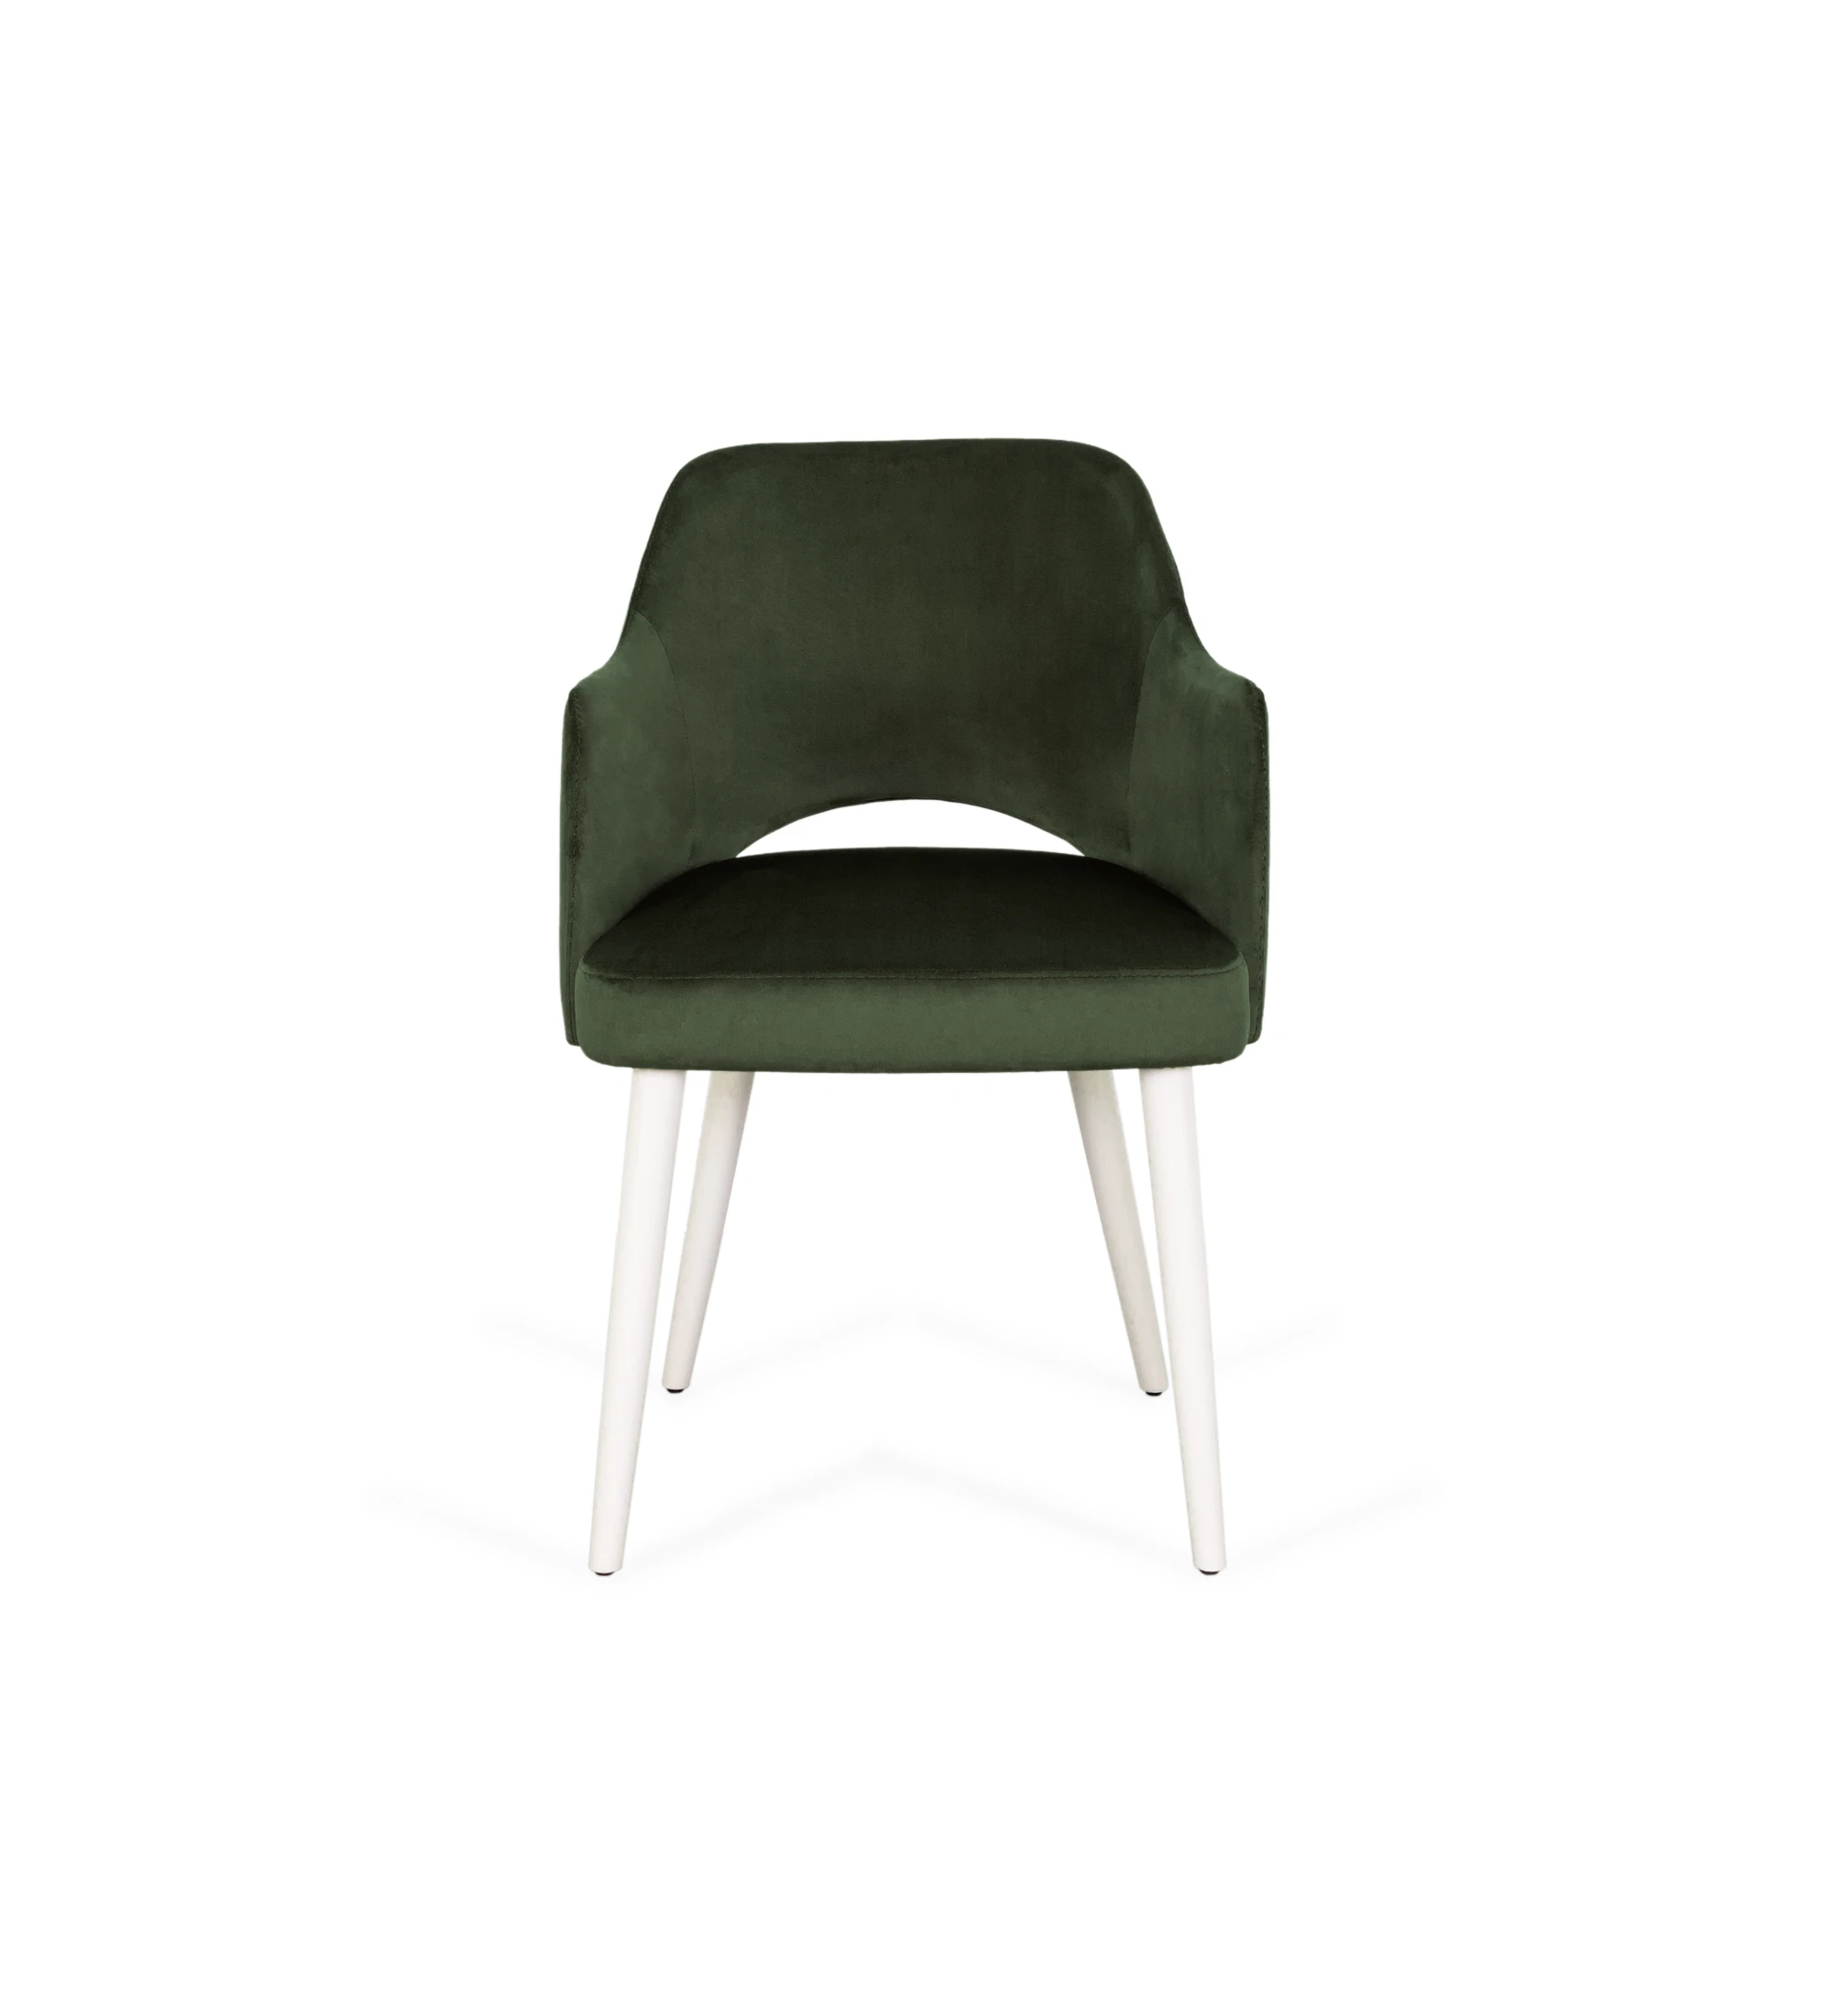 Cadeira Londres com braços estofada a tecido verde, pés lacados a pérola.